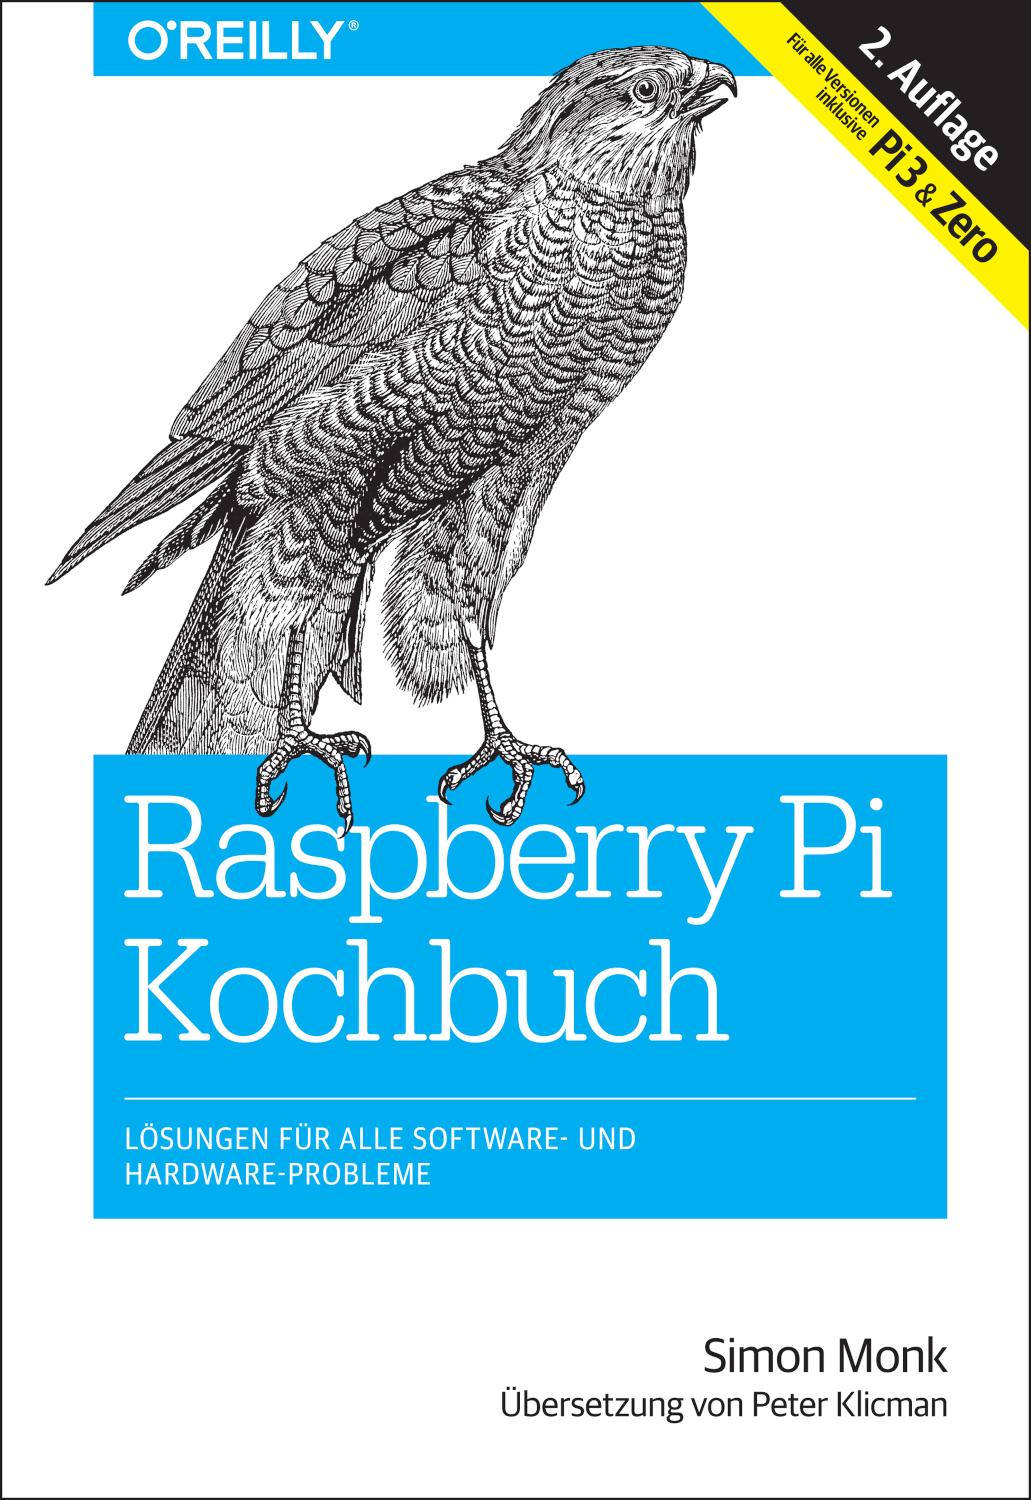 Raspberry-Pi-Kochbuch Lösungen für alle Software- und Hardware-Probleme. Für alle Versionen inklusive Pi 3& Zero